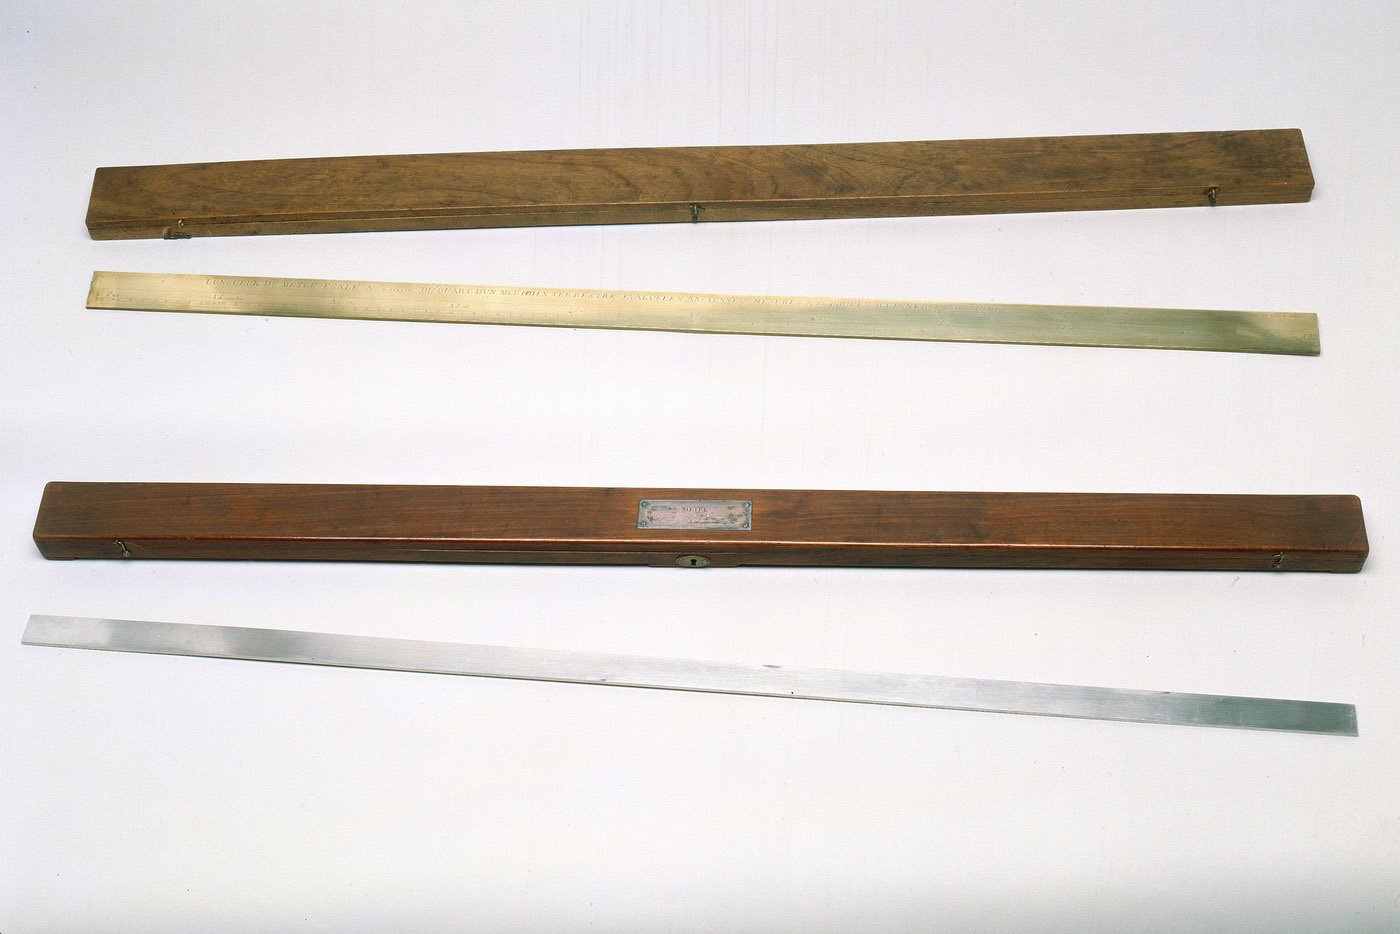 Etalon du mètre en platine fabriqué par Lenoir en 1799 et autre étalon ancien, avec leurs étuis en bois.